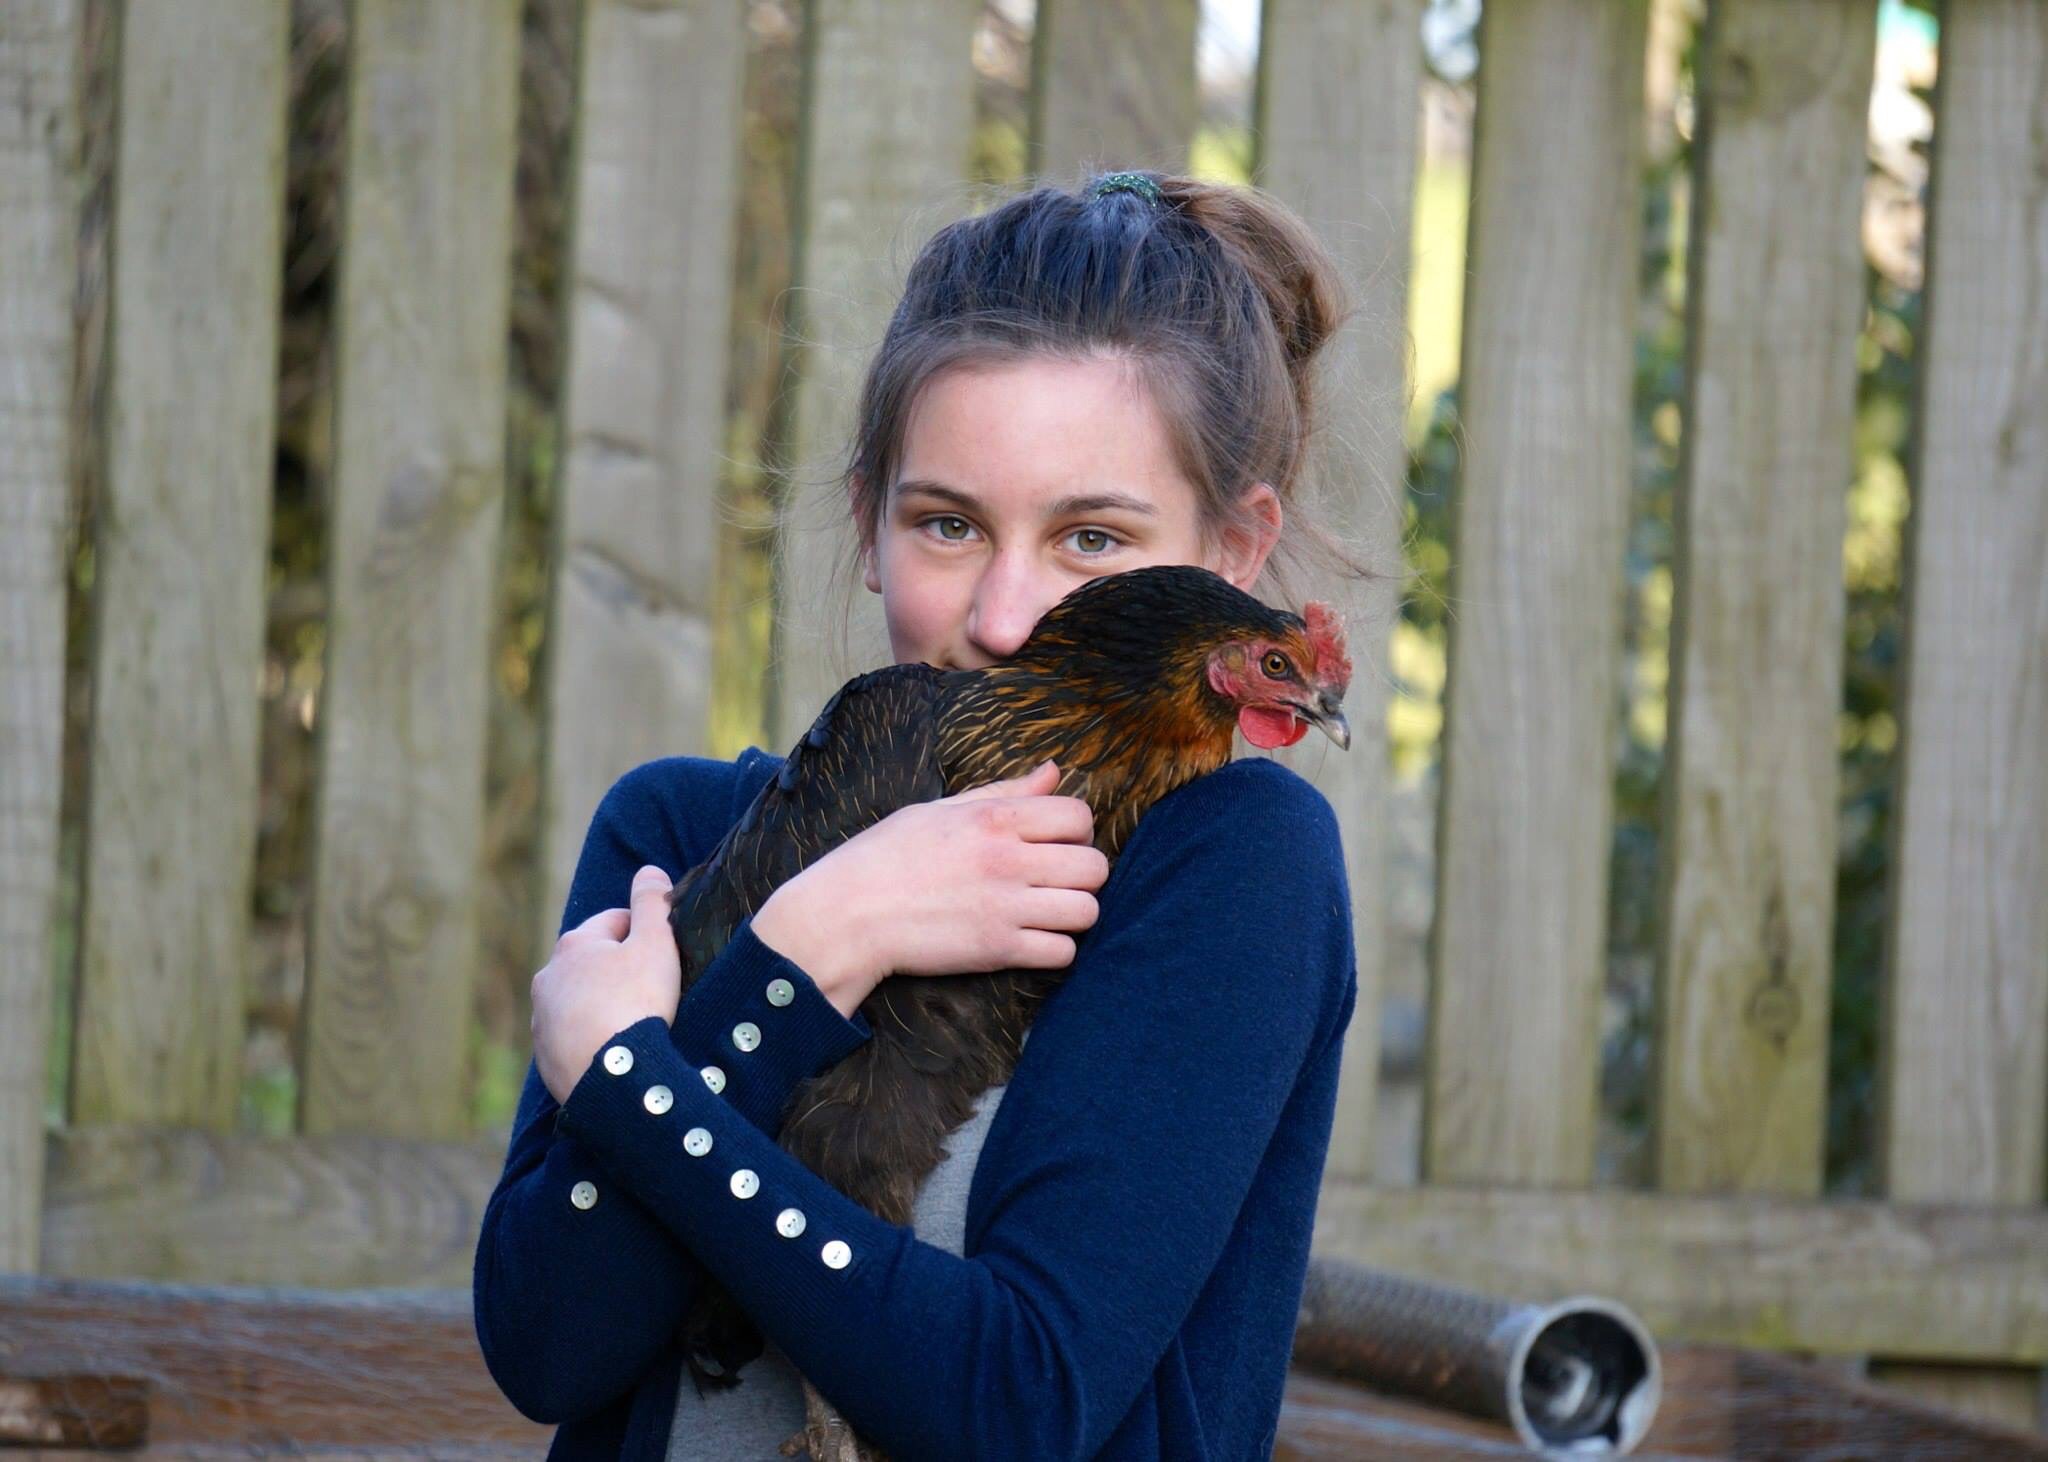 Amy Punchard hat ihre liebenswerte Henne gezähmt, indem sie sie regelmäßig hochgenommen und ihr ihre liebsten Leckerbissen gegeben hat